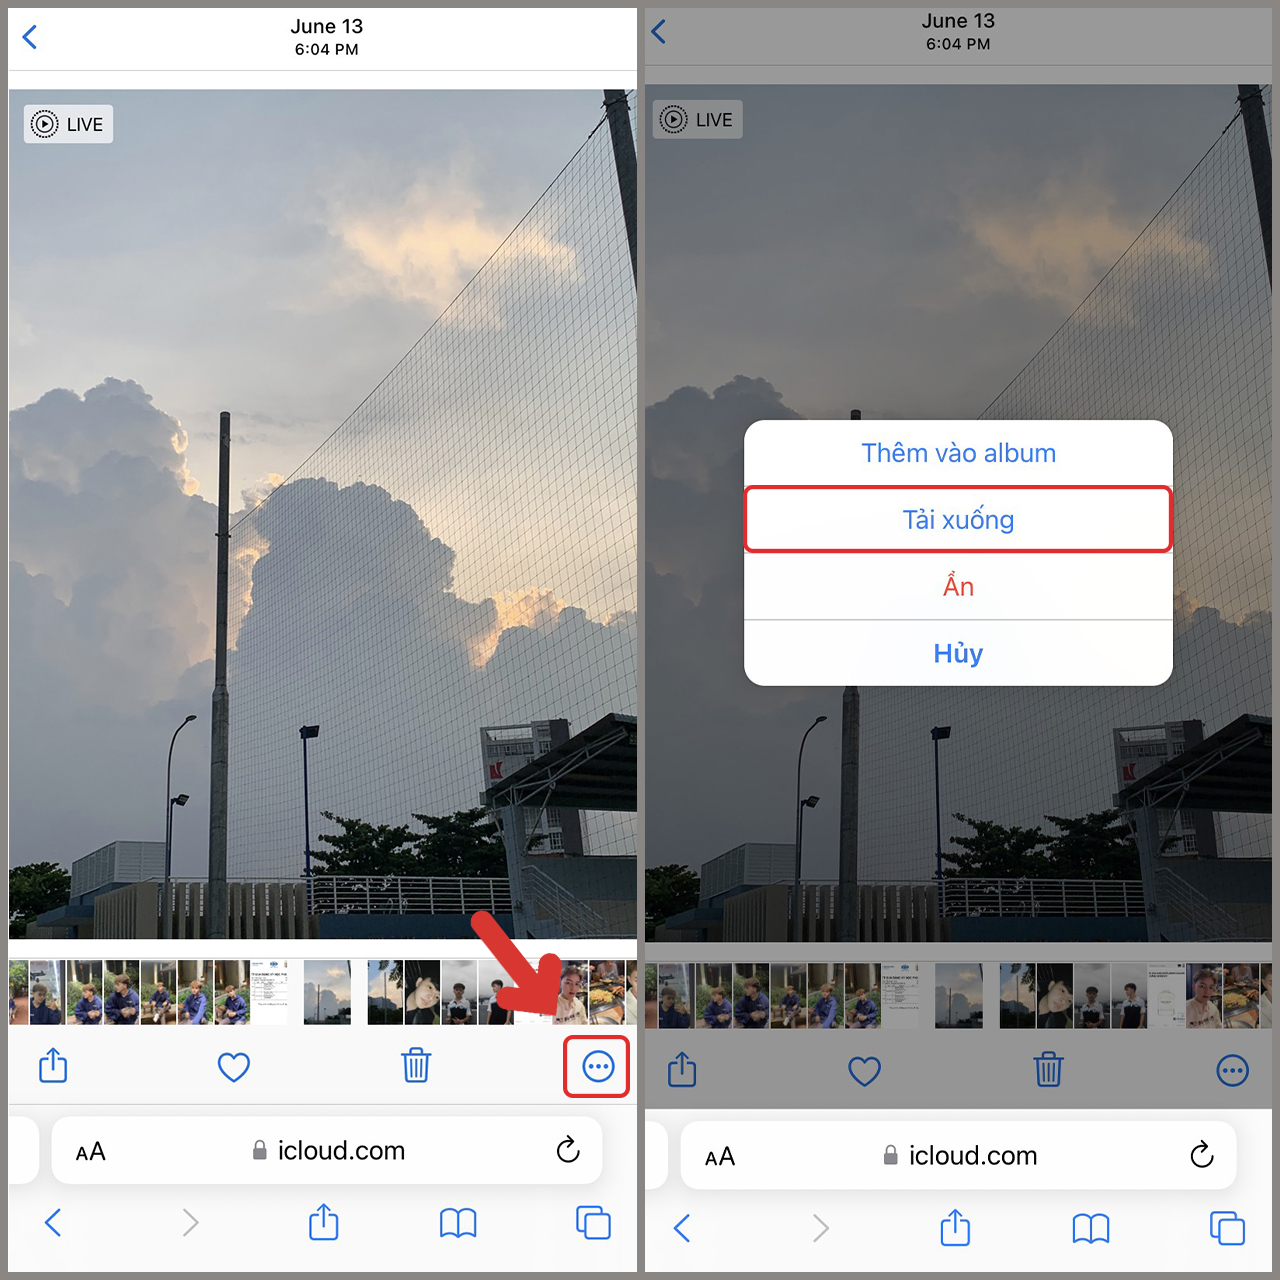 Hãy trải nghiệm trọn vẹn kho ảnh lưu trữ trên iCloud của bạn bằng cách tải chúng trực tiếp về iPhone. Với chỉ vài thao tác đơn giản, bạn sẽ sở hữu tất cả những khoảnh khắc đẹp nhất mà bạn đã lưu trữ trên đám mây iCloud.